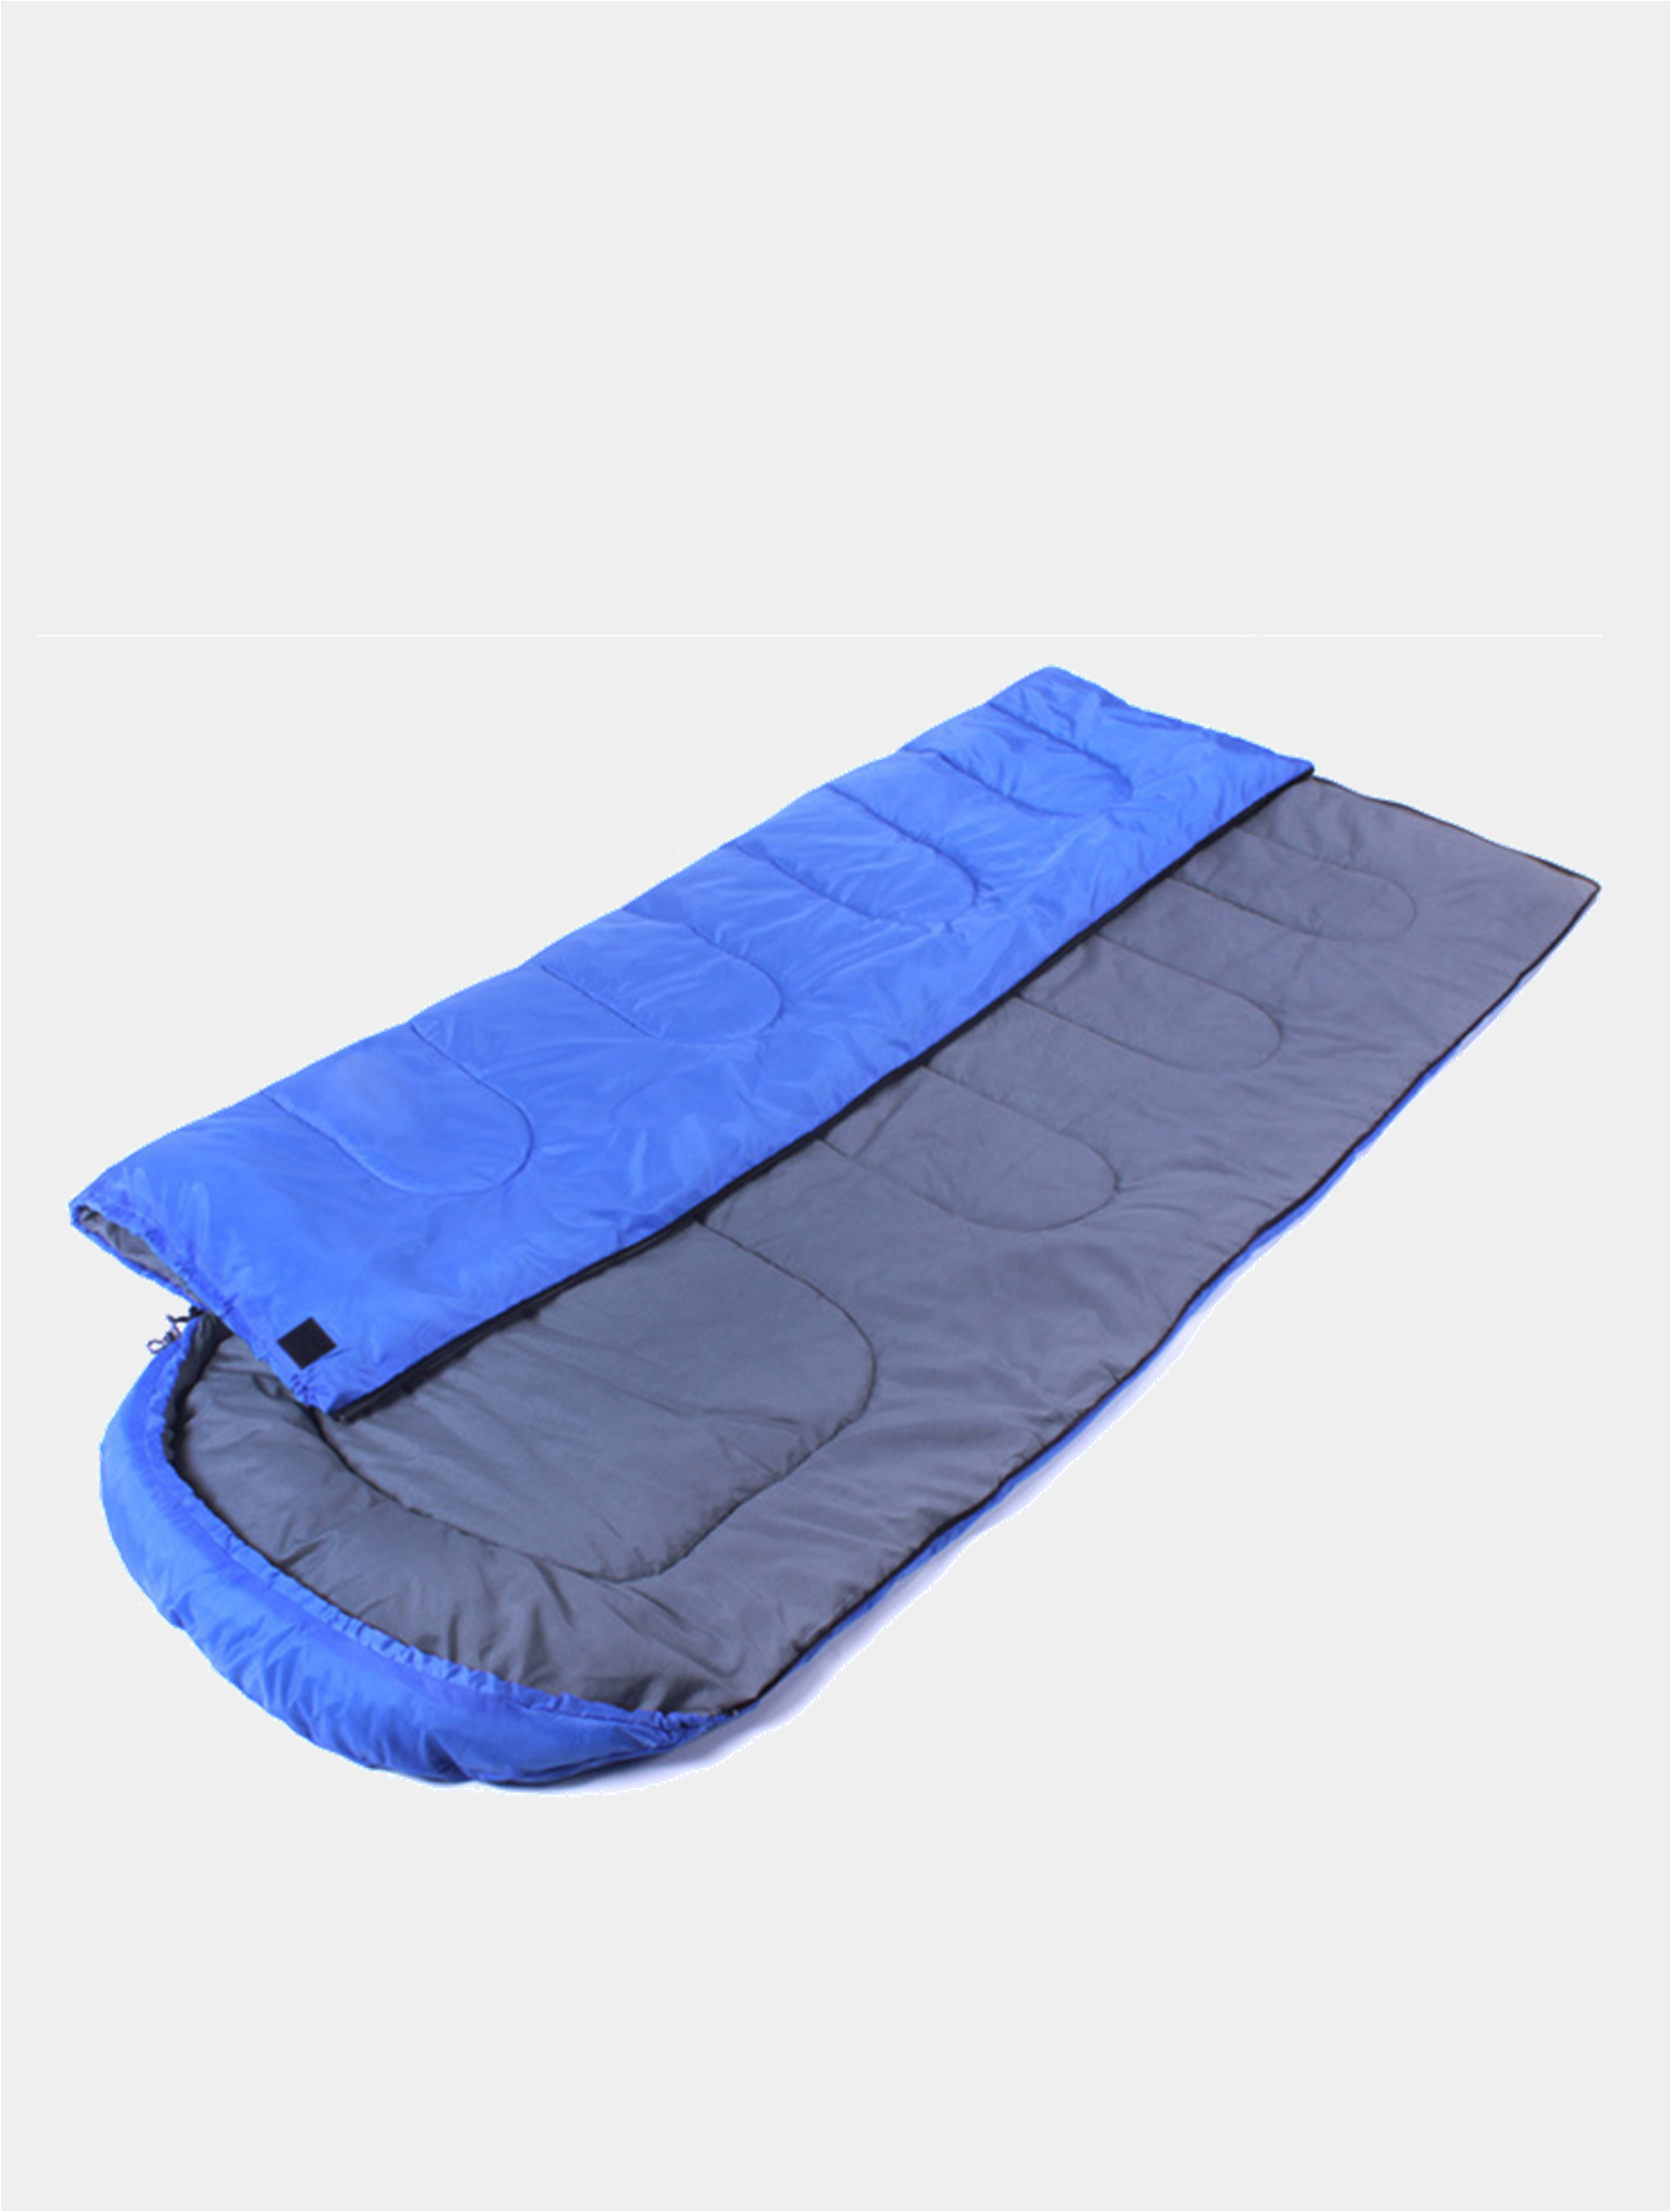 Спальный мешок. Одеяло для похода. Мешок для сна походный. Спальник конверт в палатку.